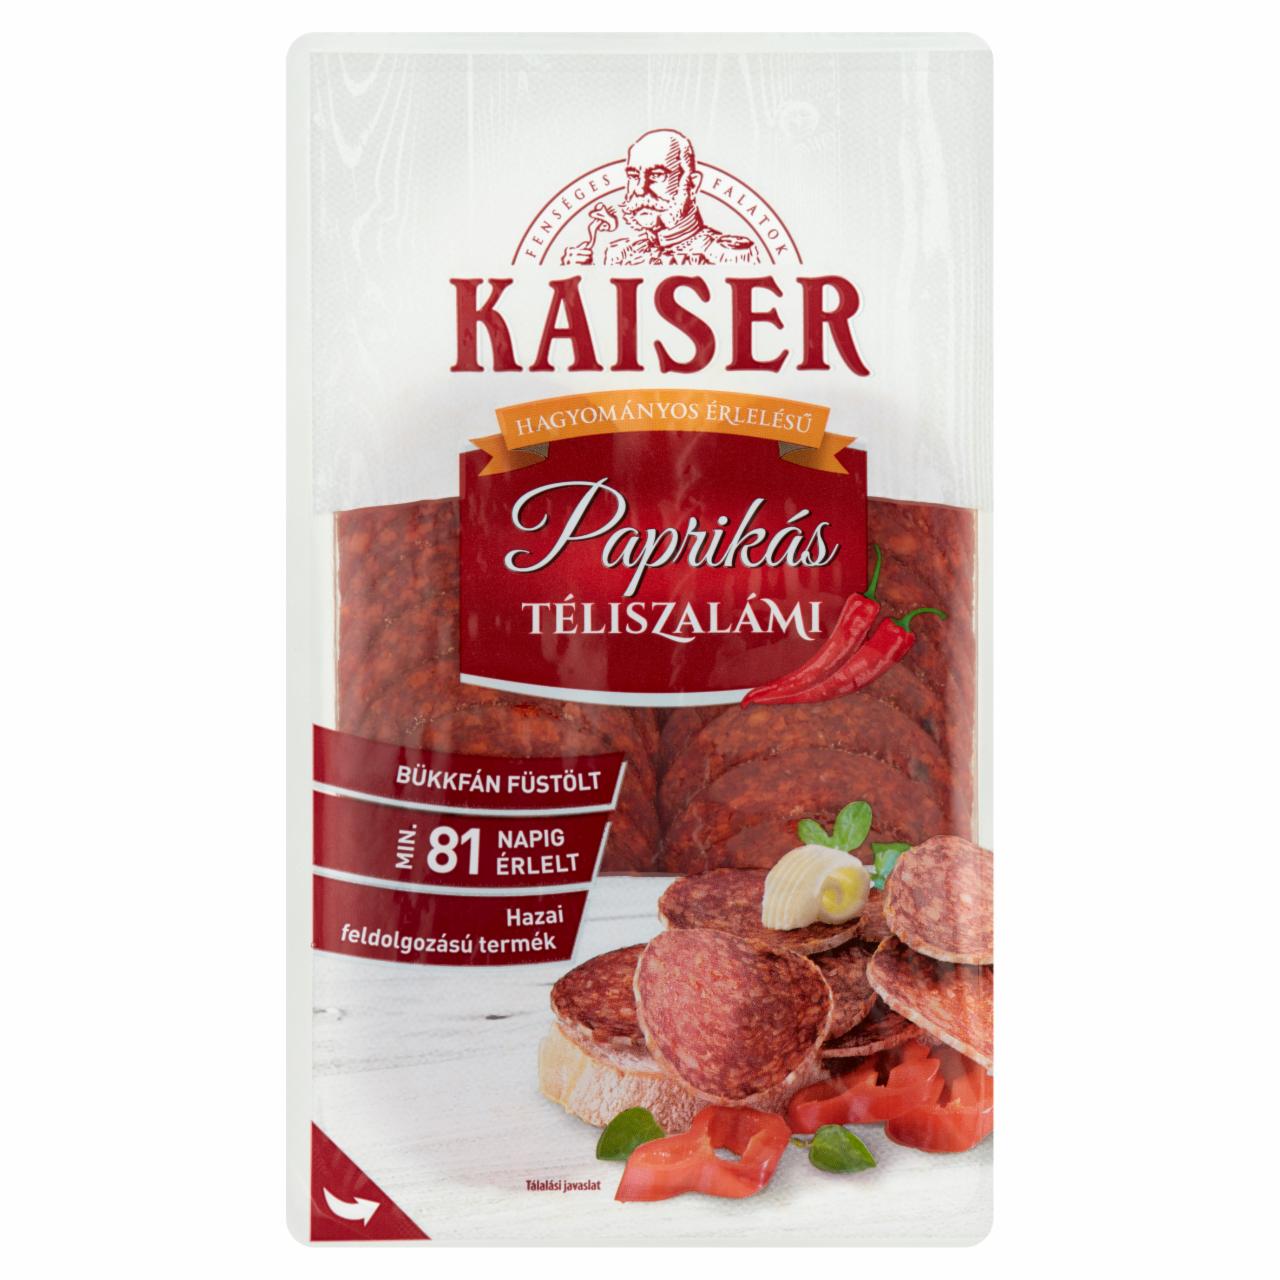 Képek - Kaiser szeletelt paprikás téliszalámi 75 g